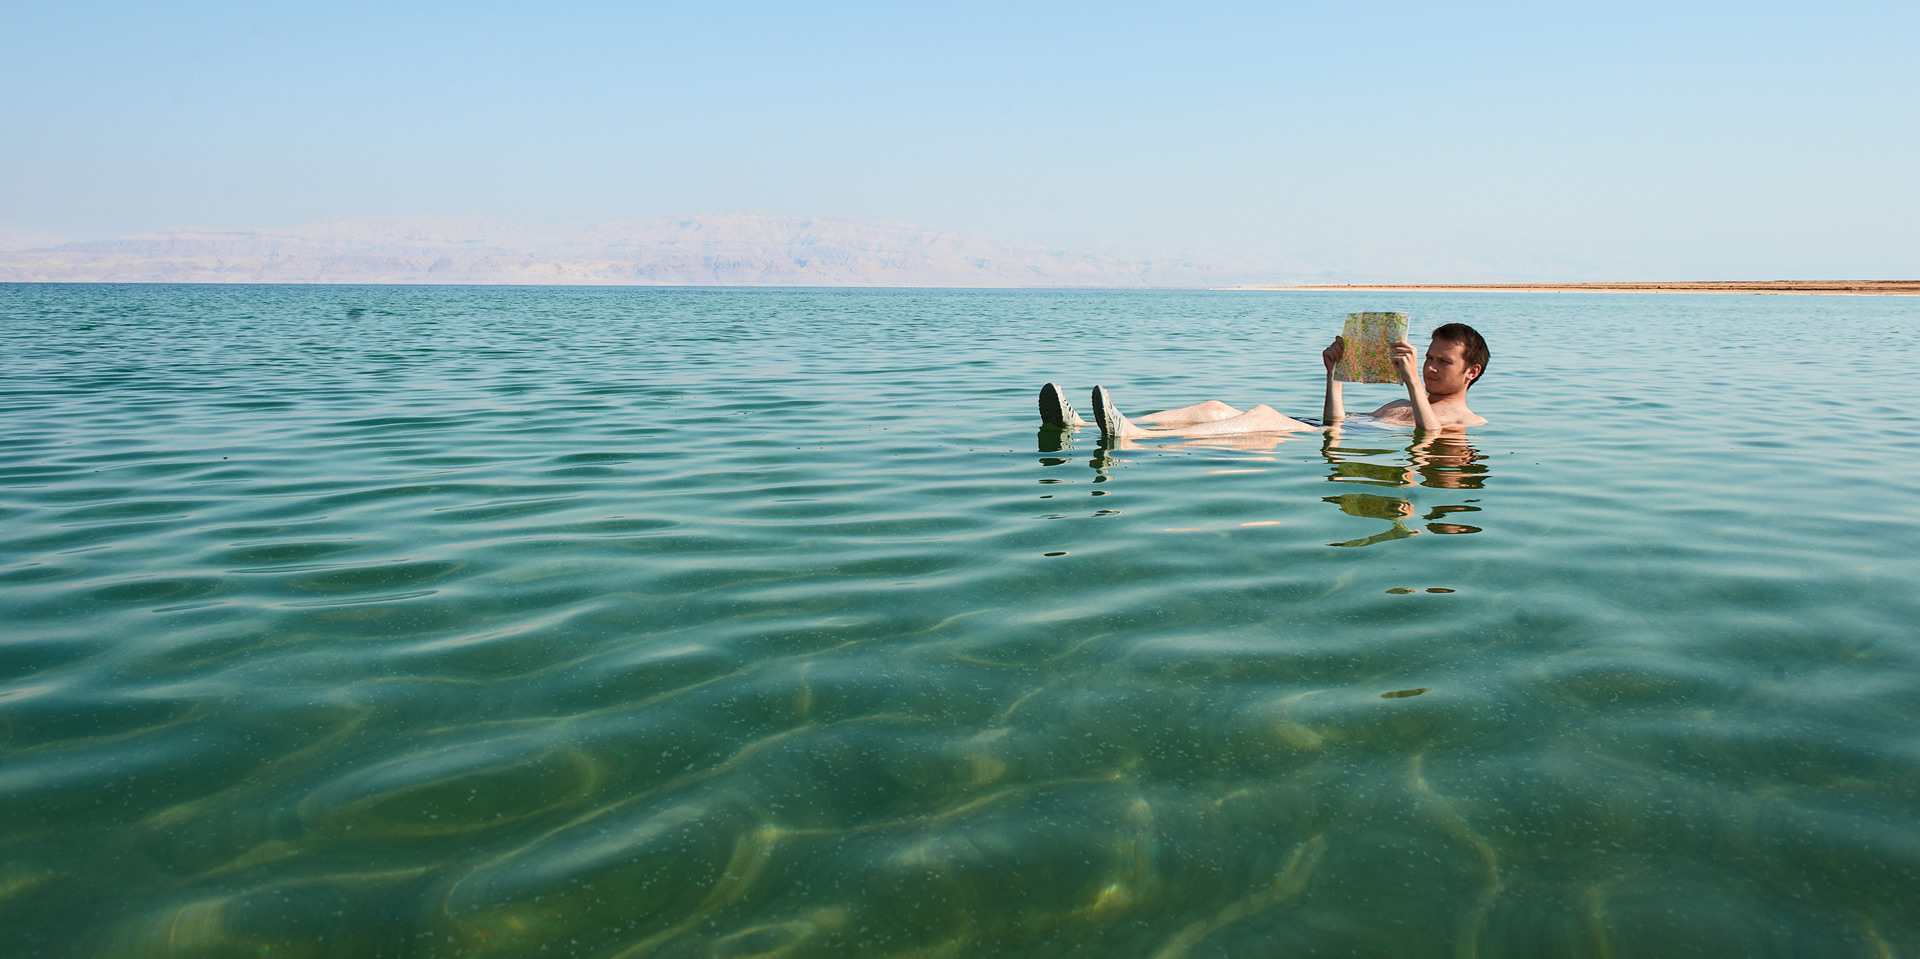 Part 6 - Dead Sea